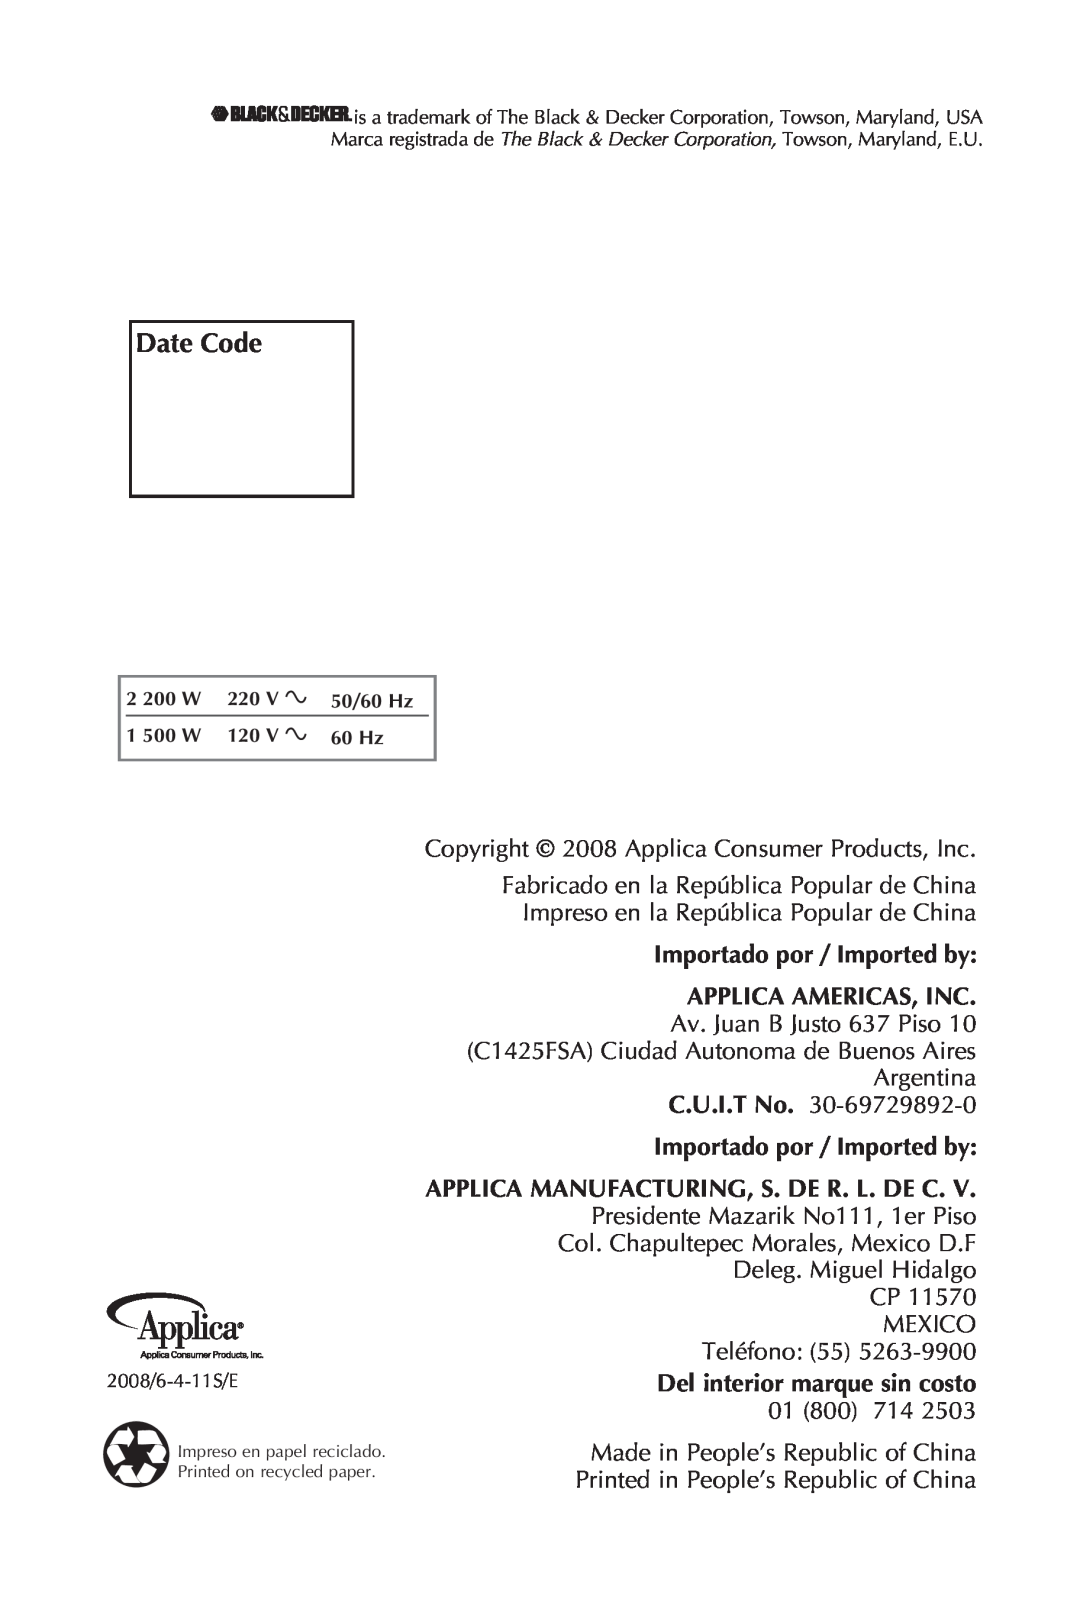 Black & Decker JKC651KT manual Date Code, Importado por / Imported by Applica Americas, Inc 